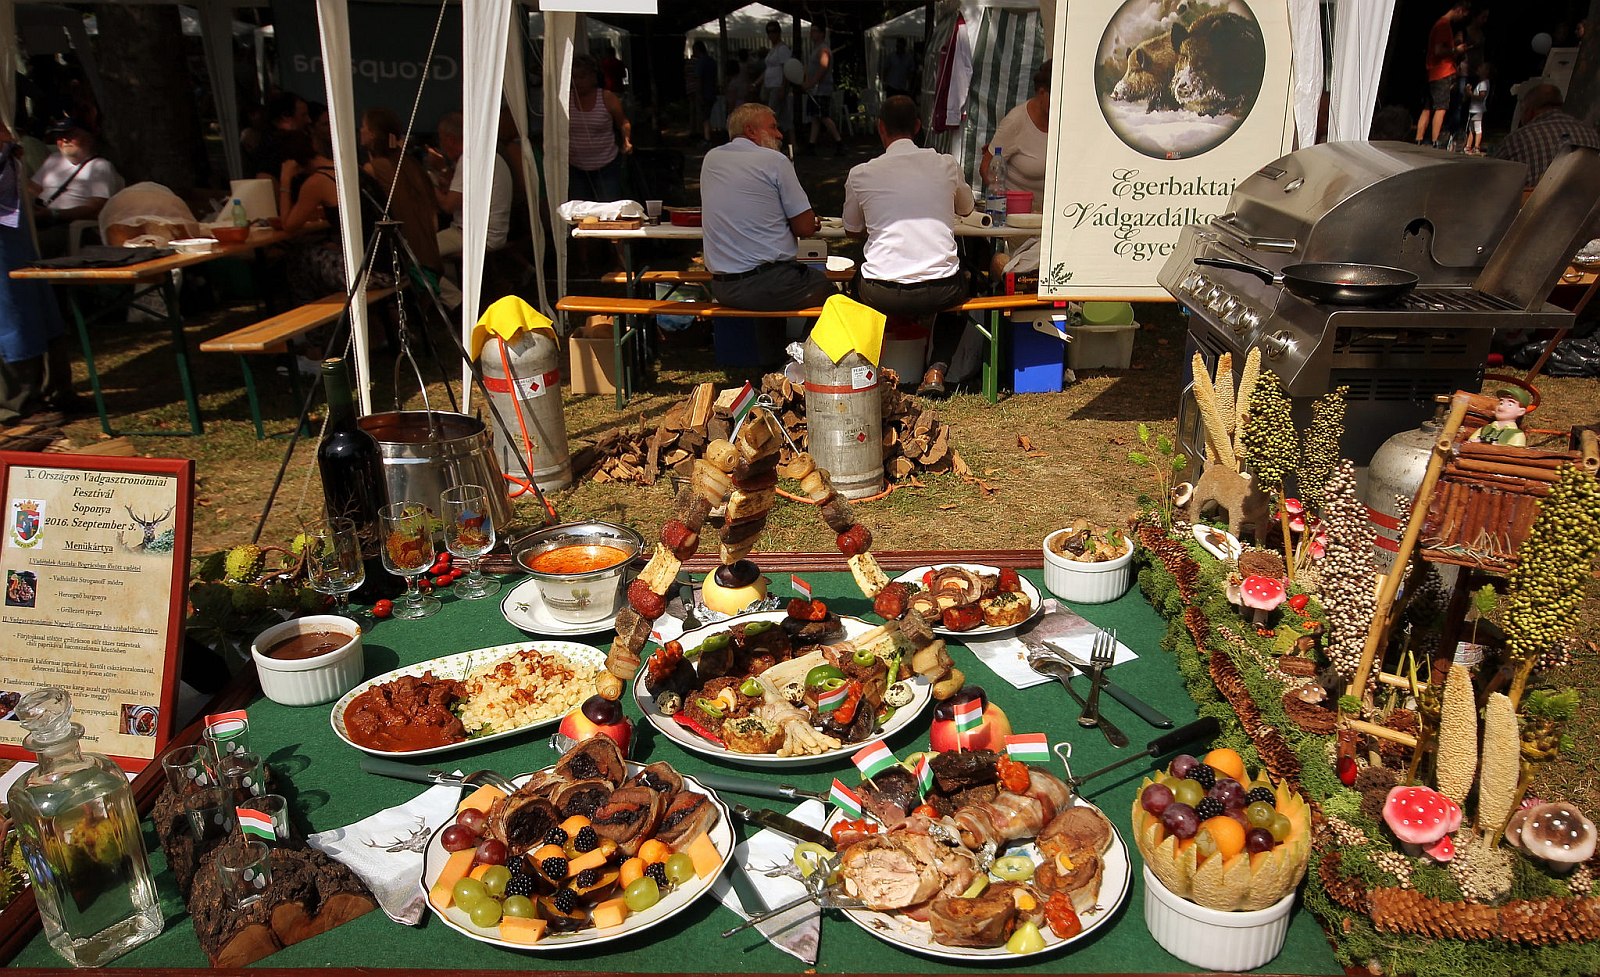 Nemzetközi Vadgasztronómiai Fesztivál - ételkülönlegességek Soponyán